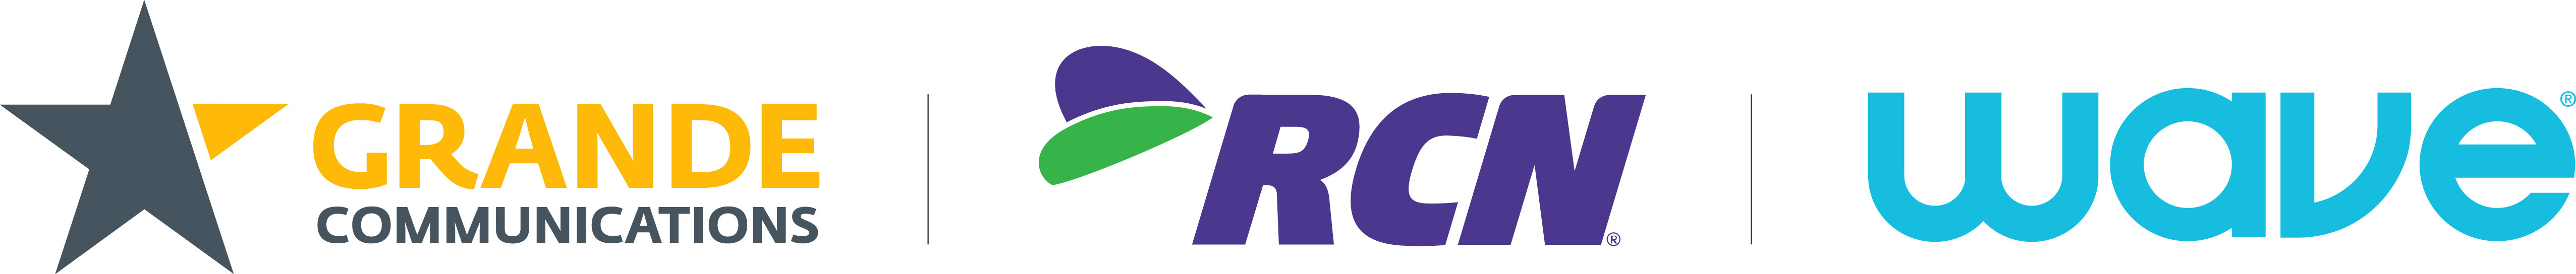 Wave | Grande | RCN family logo